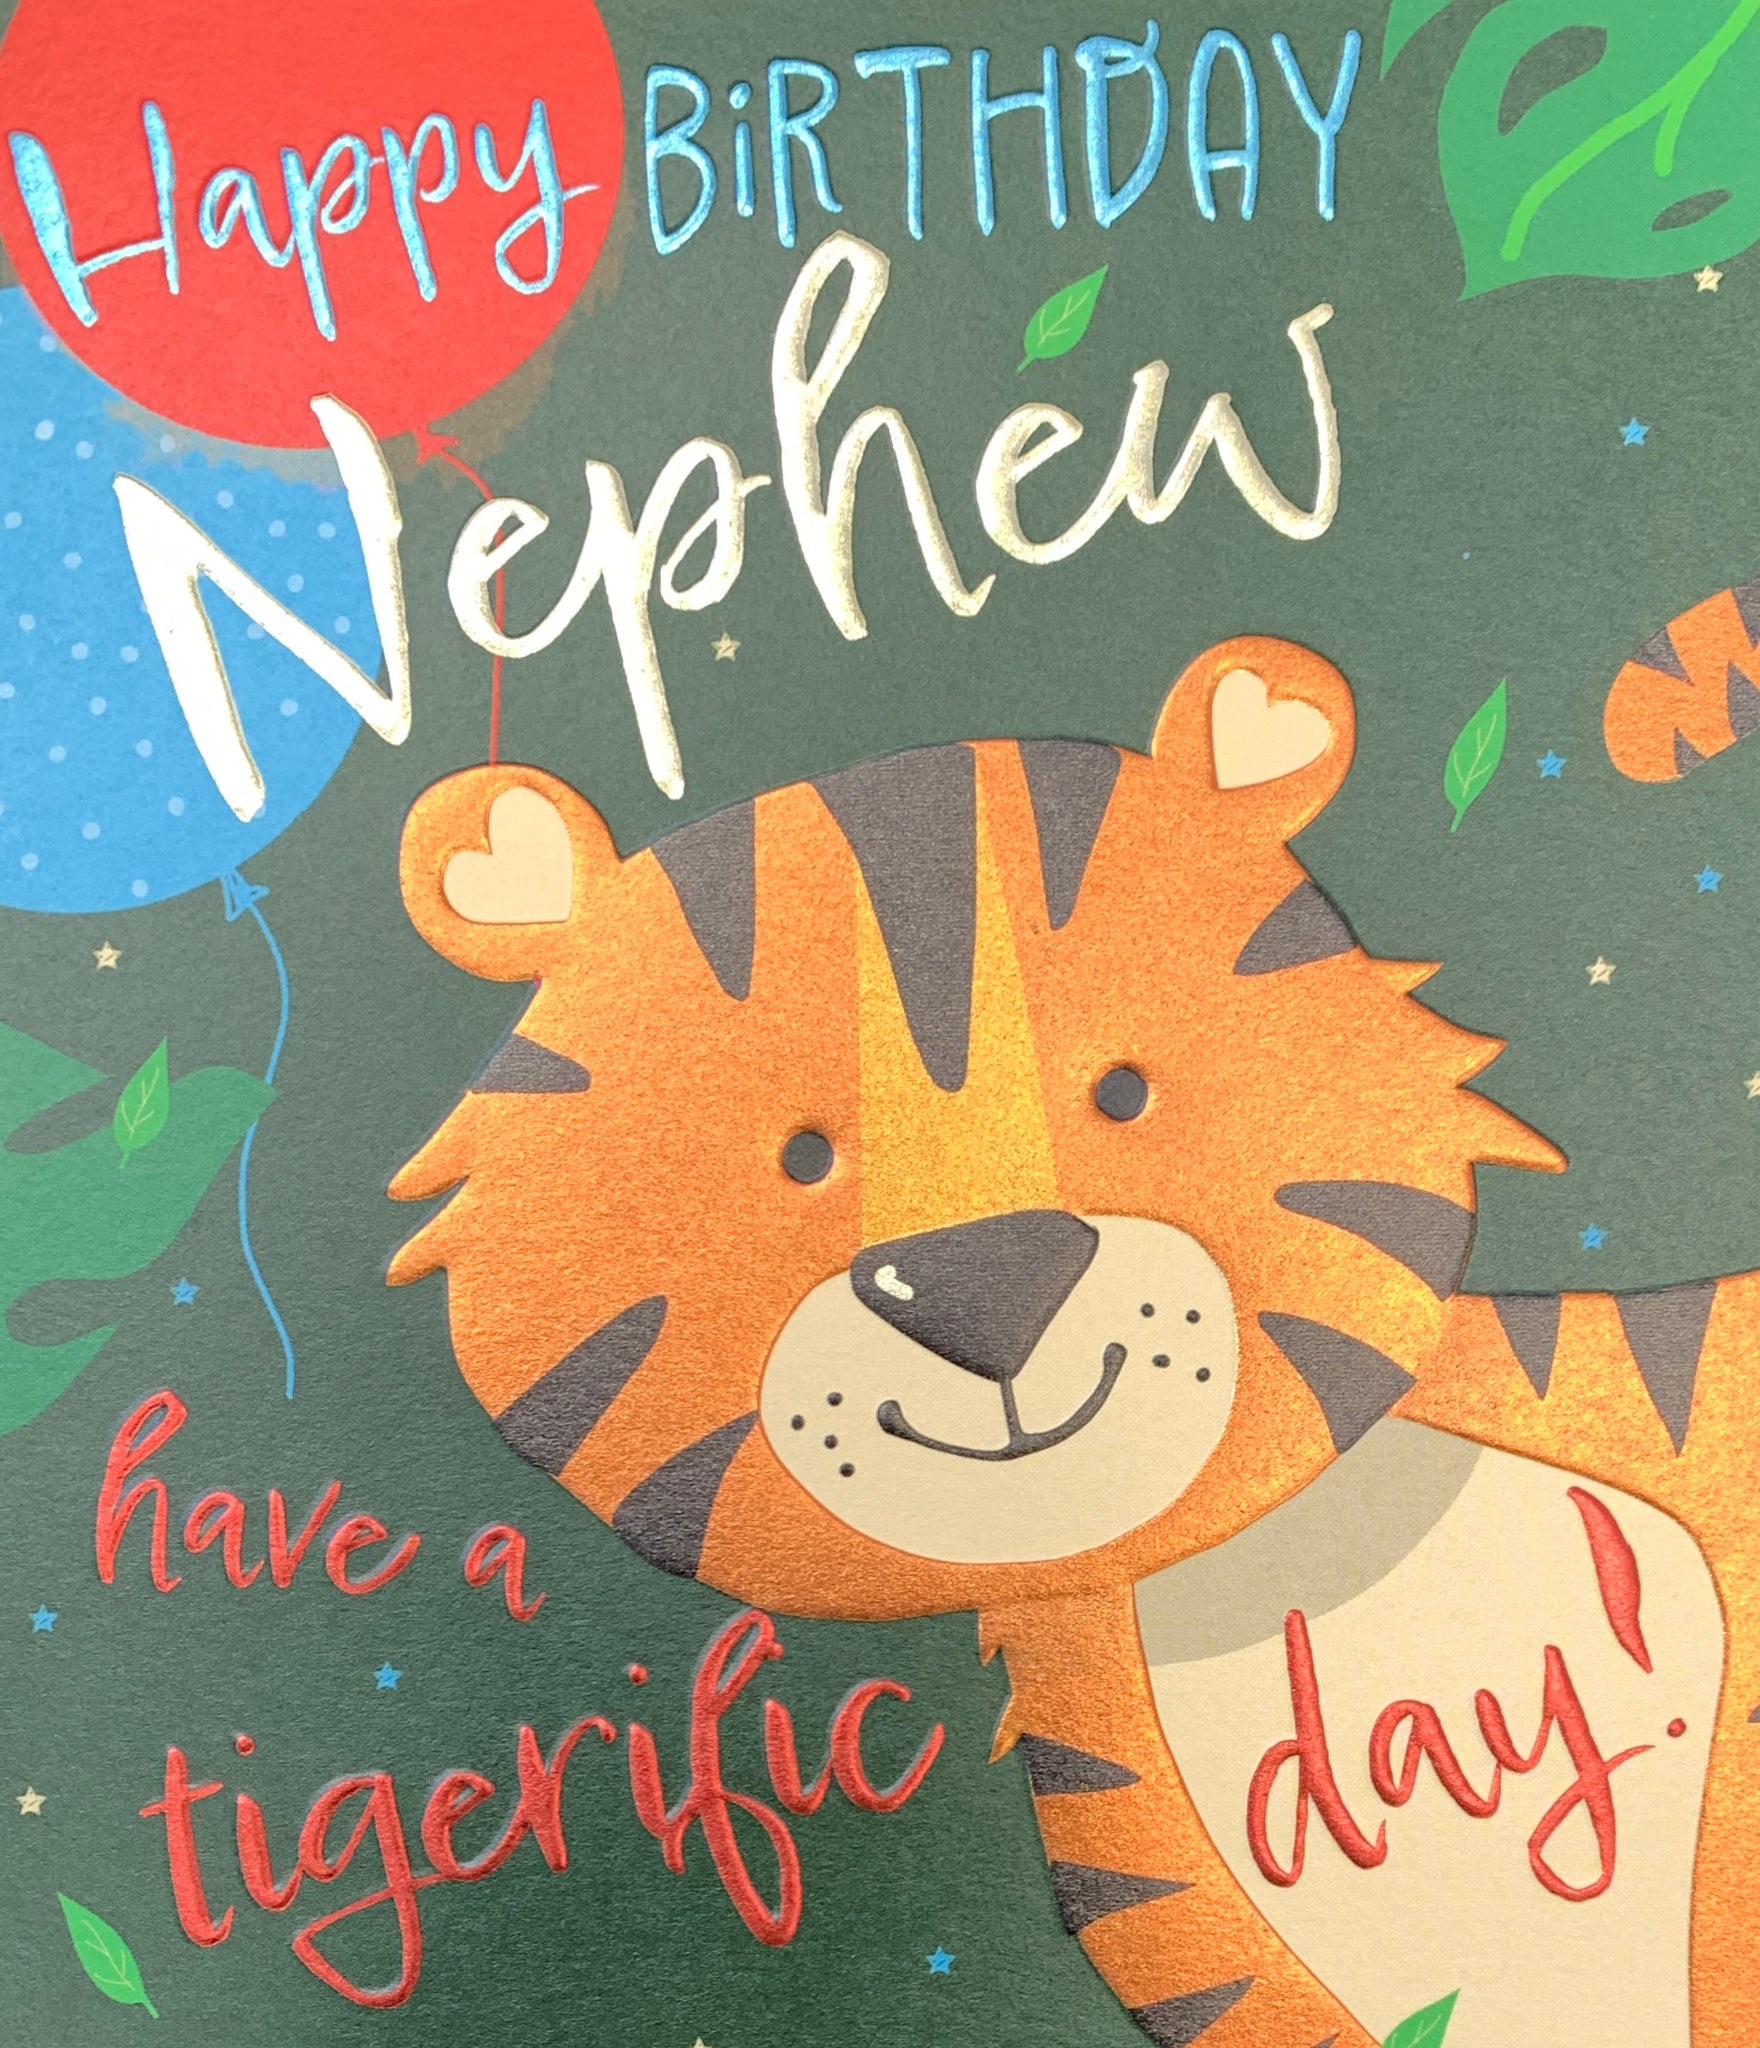 Nephew birthday card - birthday tiger